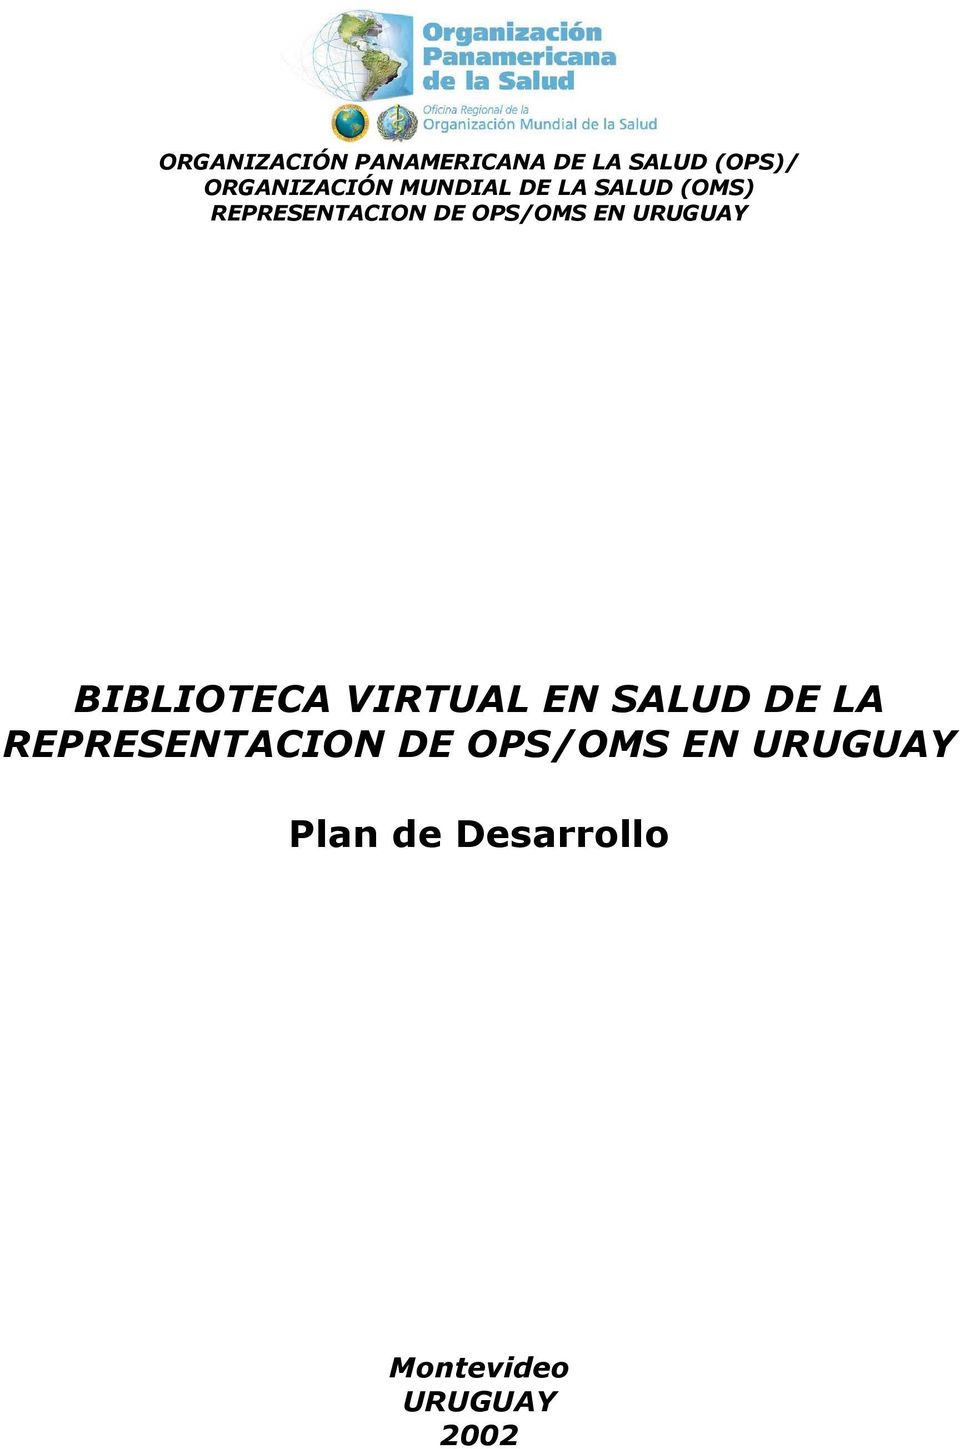 URUGUAY BIBLIOTECA VIRTUAL EN SALUD DE LA REPRESENTACION